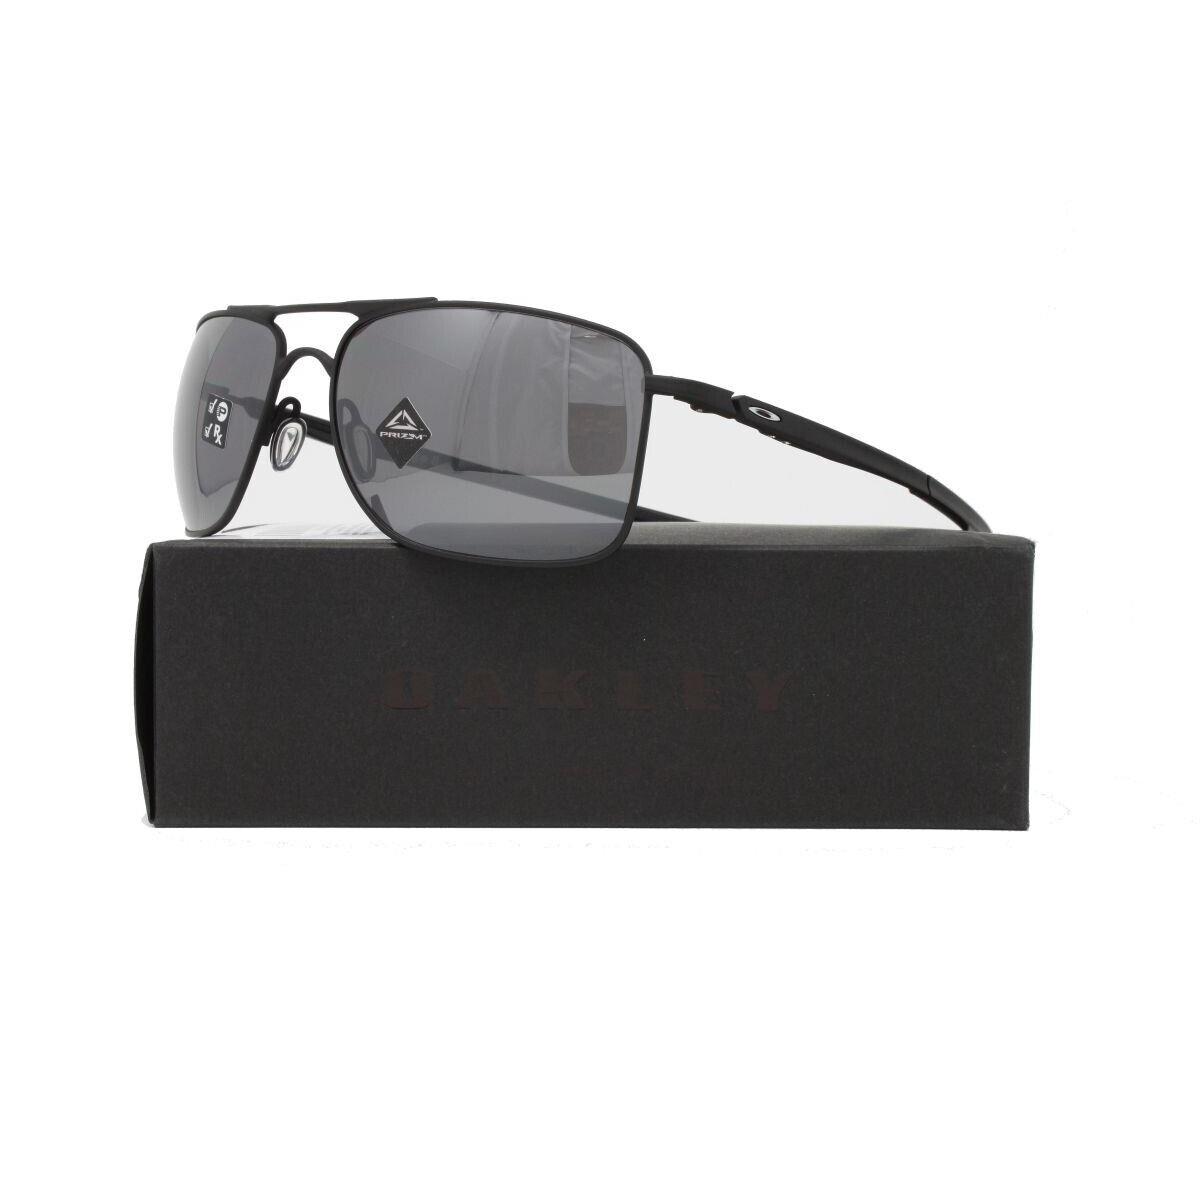 Oakley Sunglasses Gauge 8 OO4124 Color 02 Matte Black Polarized Size 62mm - Black Frame, Black Lens